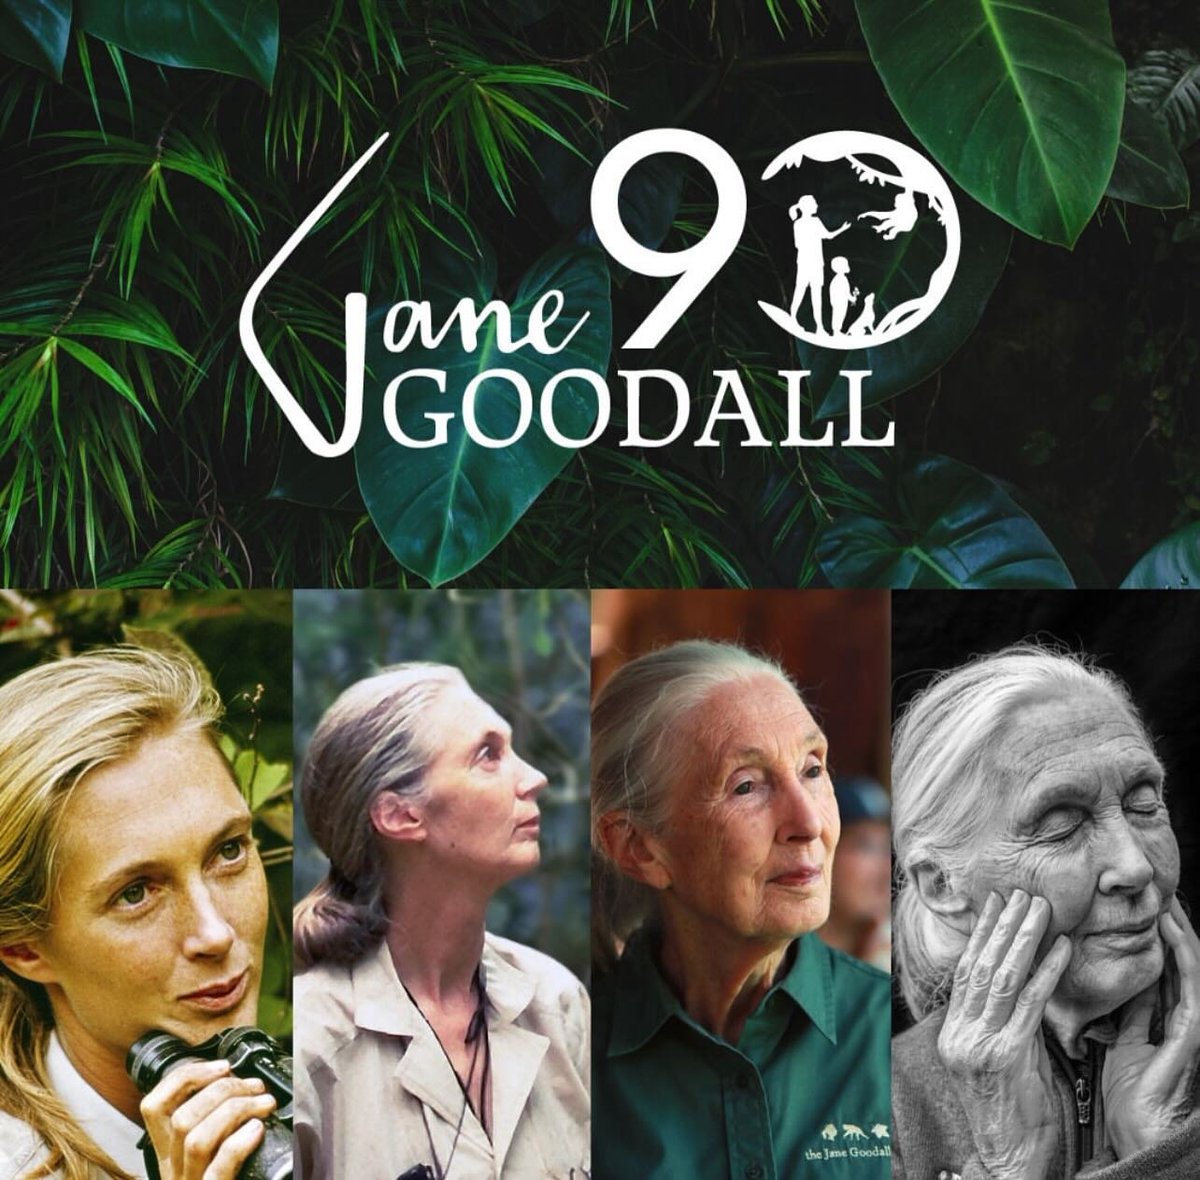 C’est parti pour une année de célébrations!
Jane Goodall fêtera cette année son 90ème anniversaire.. @JaneGoodallFr 
Suite ... facebook.com/photo?fbid=789…

#janegoodall  #heroesofbiodiversity #Jane90years #janegoodall90 #engagement #chaquegestecompte #JGIFrance #biodiversité